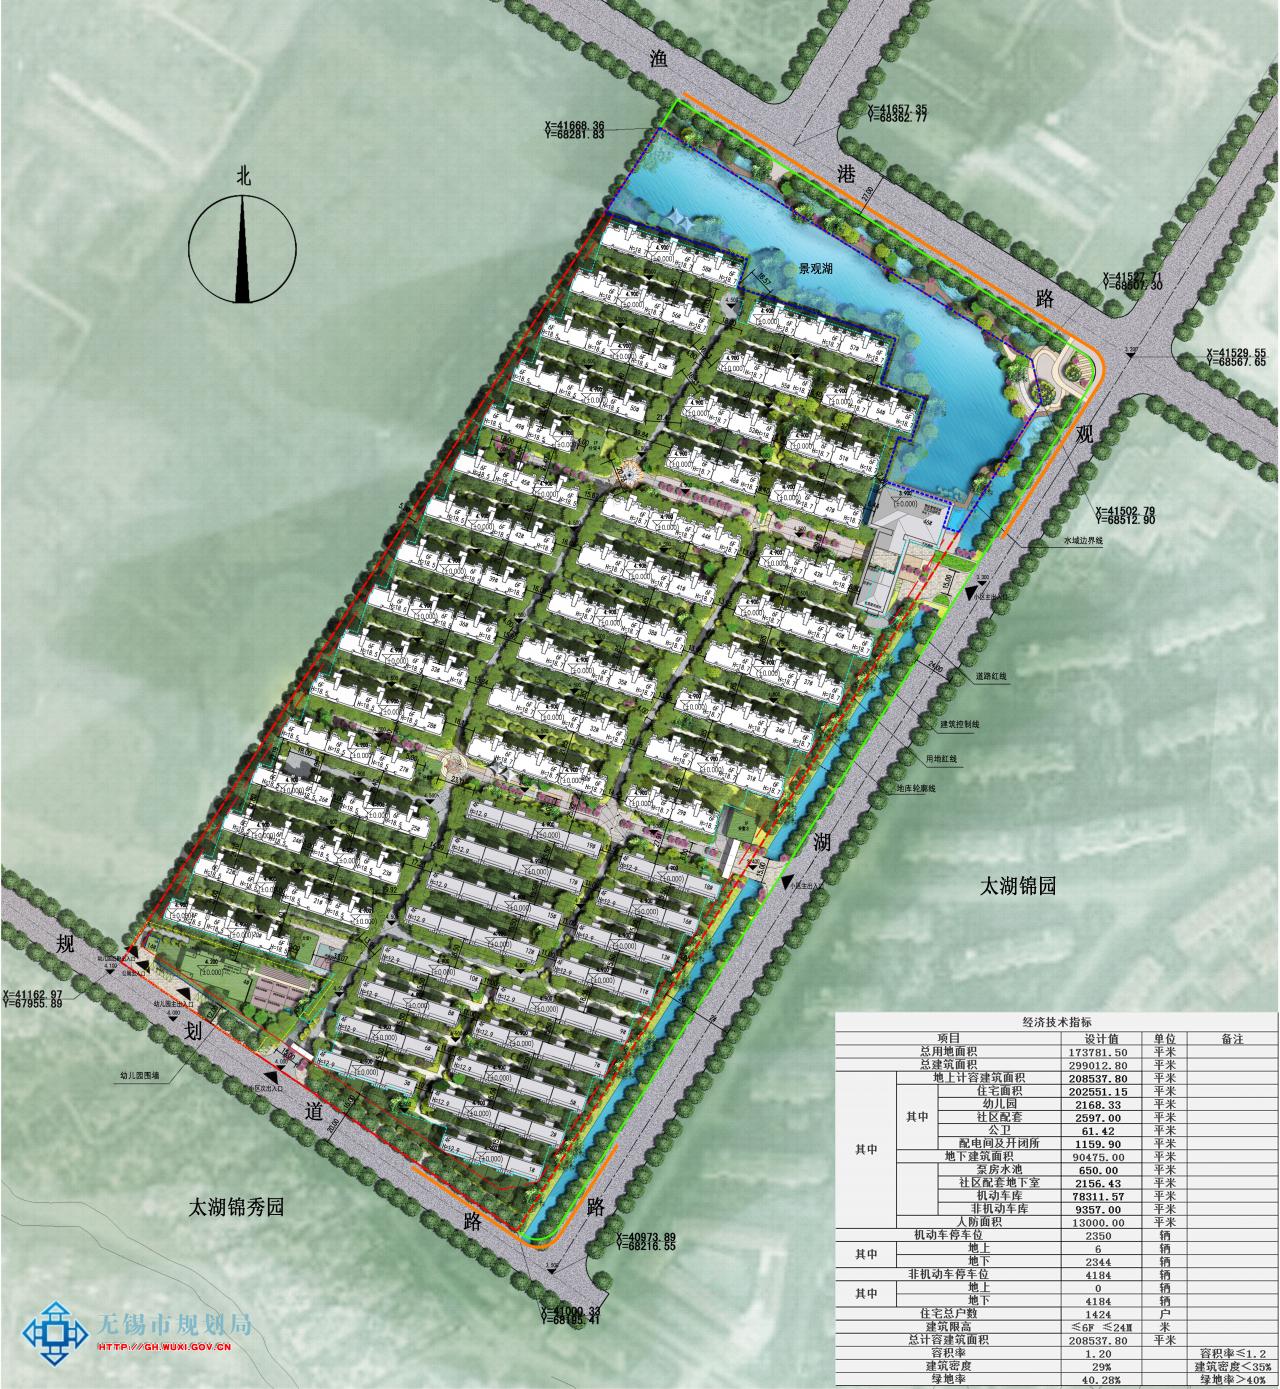 XDG-2011-66号地块开发建设项目规划设计方案批前公示